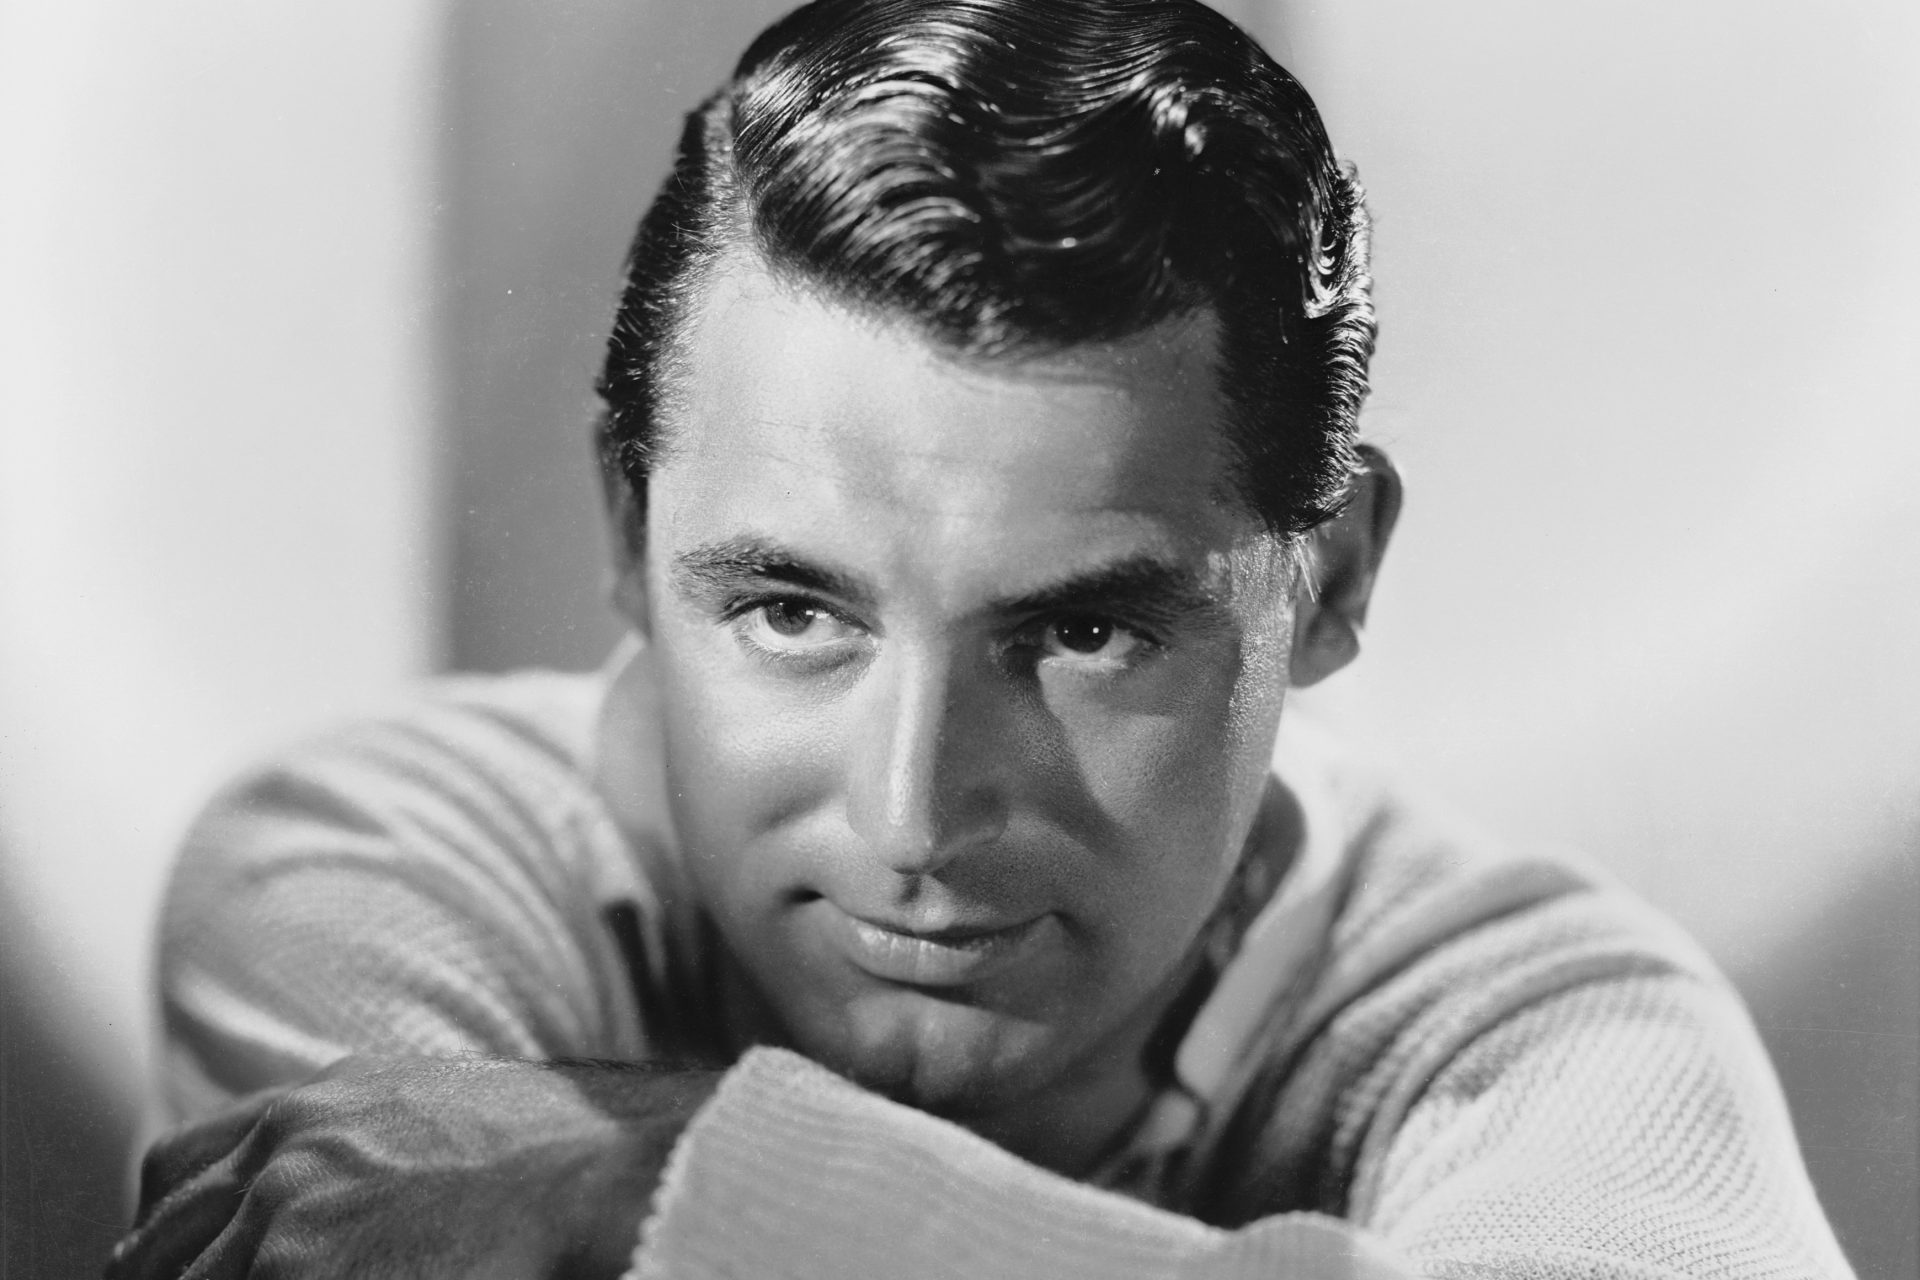 <p>Cary Grant, uno degli attori più carismatici di Hollywood, si ritirò dall'industria cinematografica nel 1966 all'età di 62 anni. Spostò la sua attenzione sulla crescita di sua figlia Jennifer. "Avrei potuto continuare a recitare e interpretare il nonno o il barbone, ma ho scoperto cose più importanti nella vita", ha detto, secondo una biografia.</p>